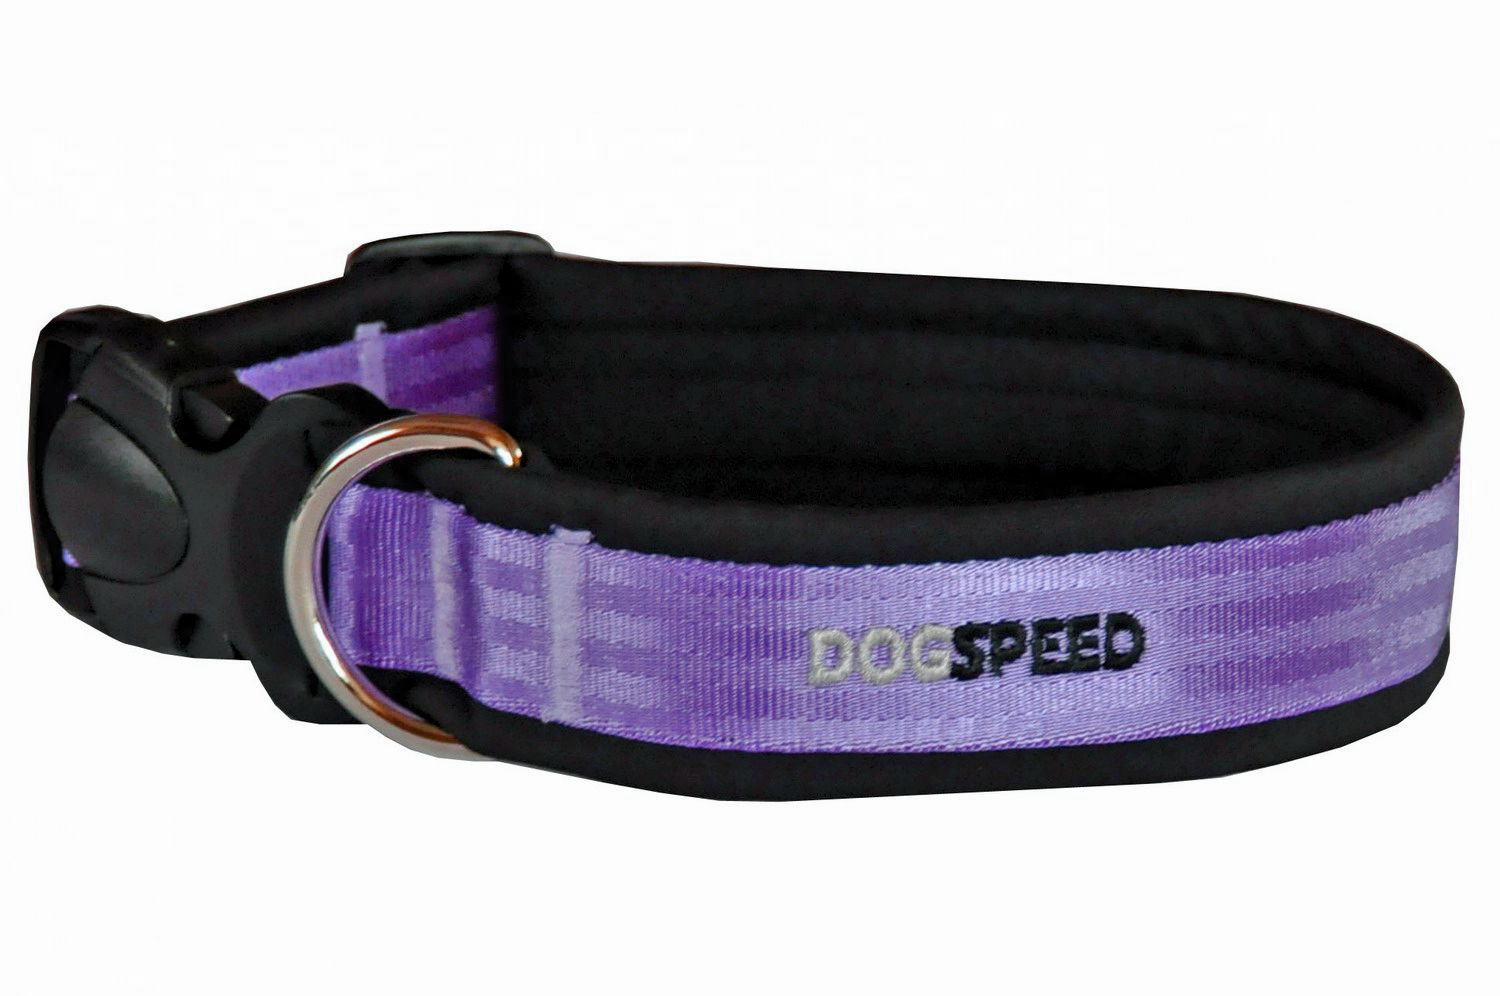 Obroża dla psa podszyta softshellem, czarno-fioletowa, możliwy haft np. imię psa, szer 3,8cm